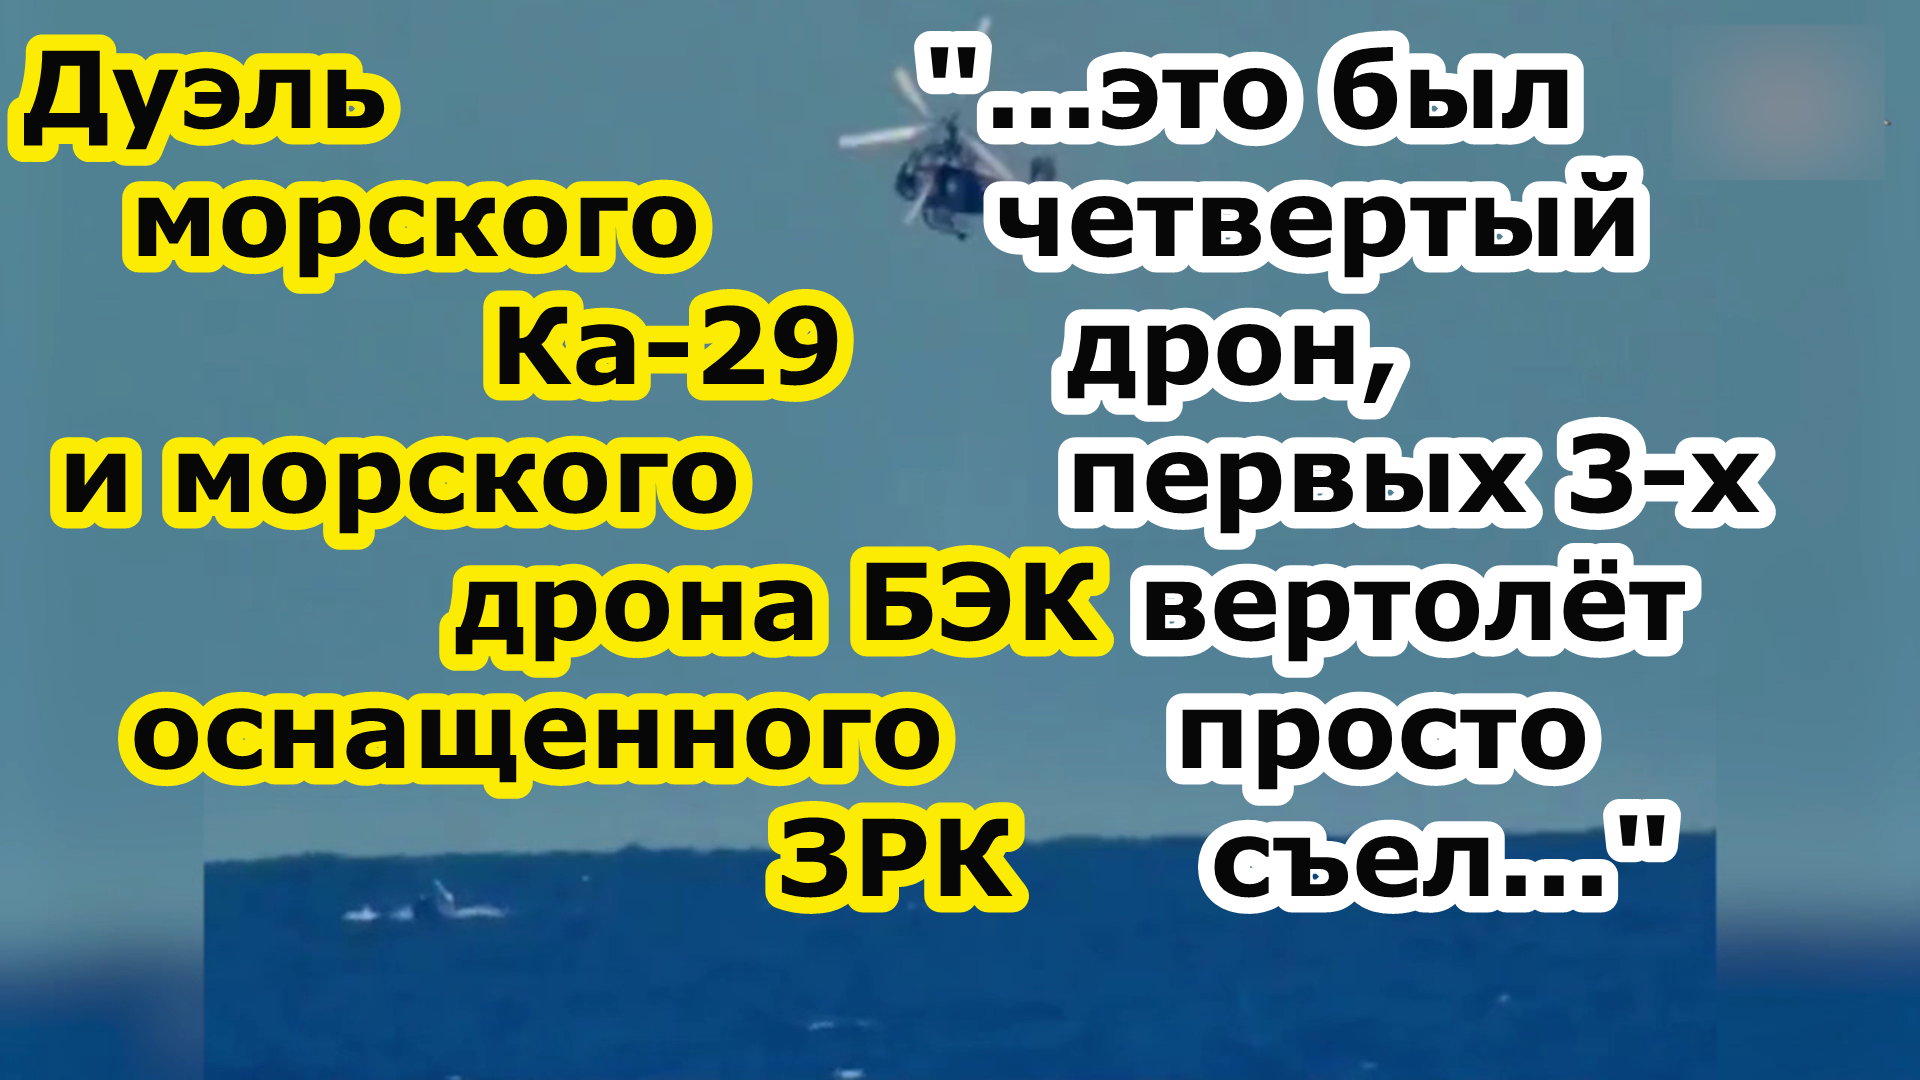 Битва Ка 29 и катера камикадзе БЭК Magura v5 с ракетами ЗРК и атака на катер проекта ic16mii в Крыму